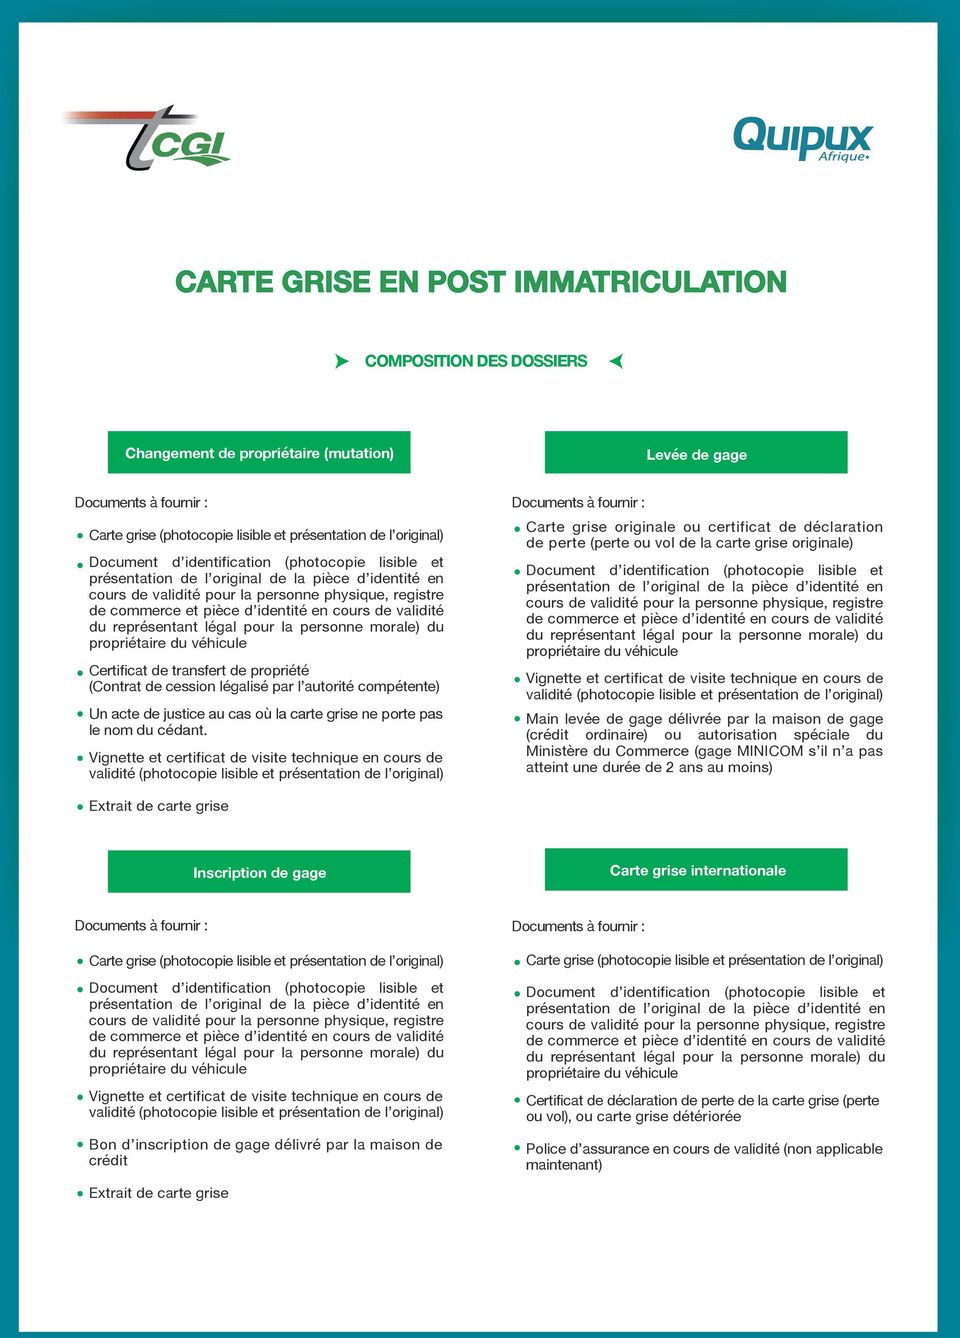 Systeme De Gestion Integree De L Ensemble Des Activites De Transports Terrestres En Cote D Ivoire Carte Grise Pdf Free Download